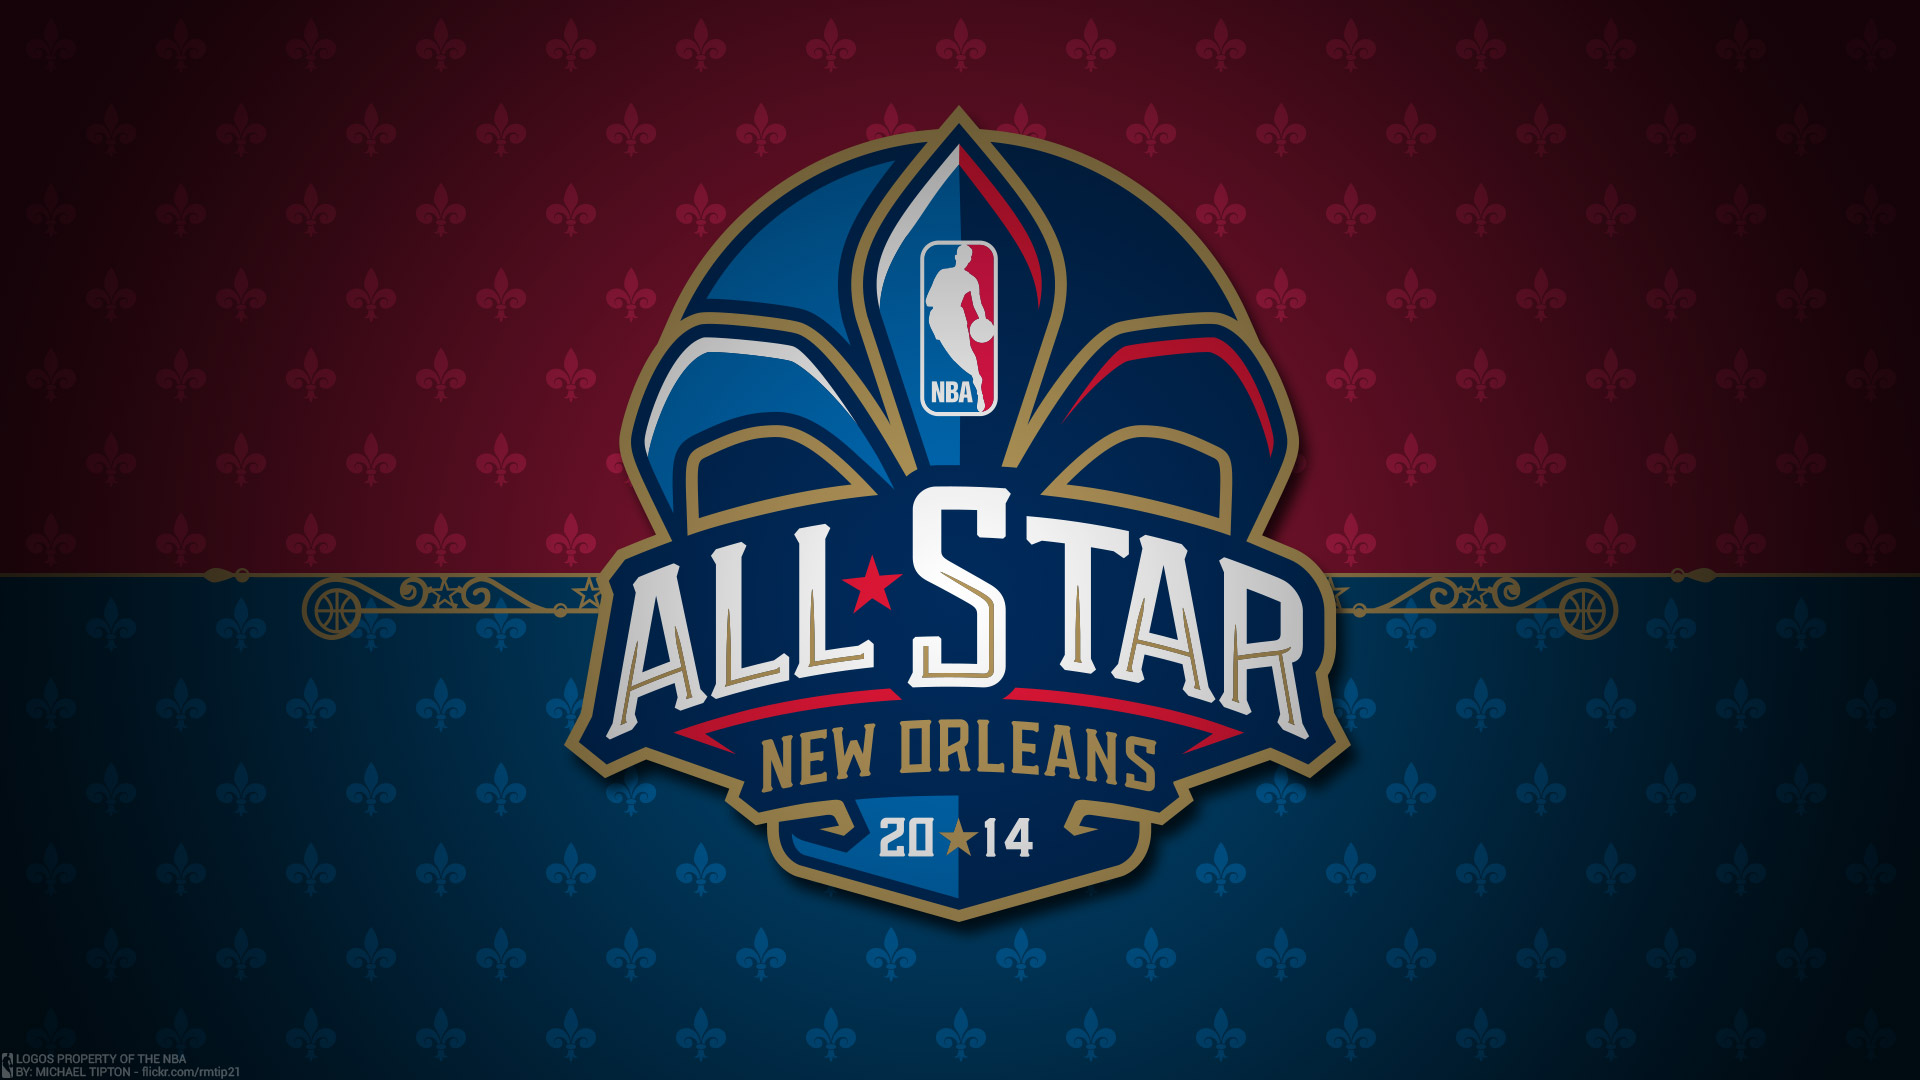 2014 NBA All-Star Logo 1920×1080 Wallpaper | Basketball Wallpapers at ...1920 x 1080